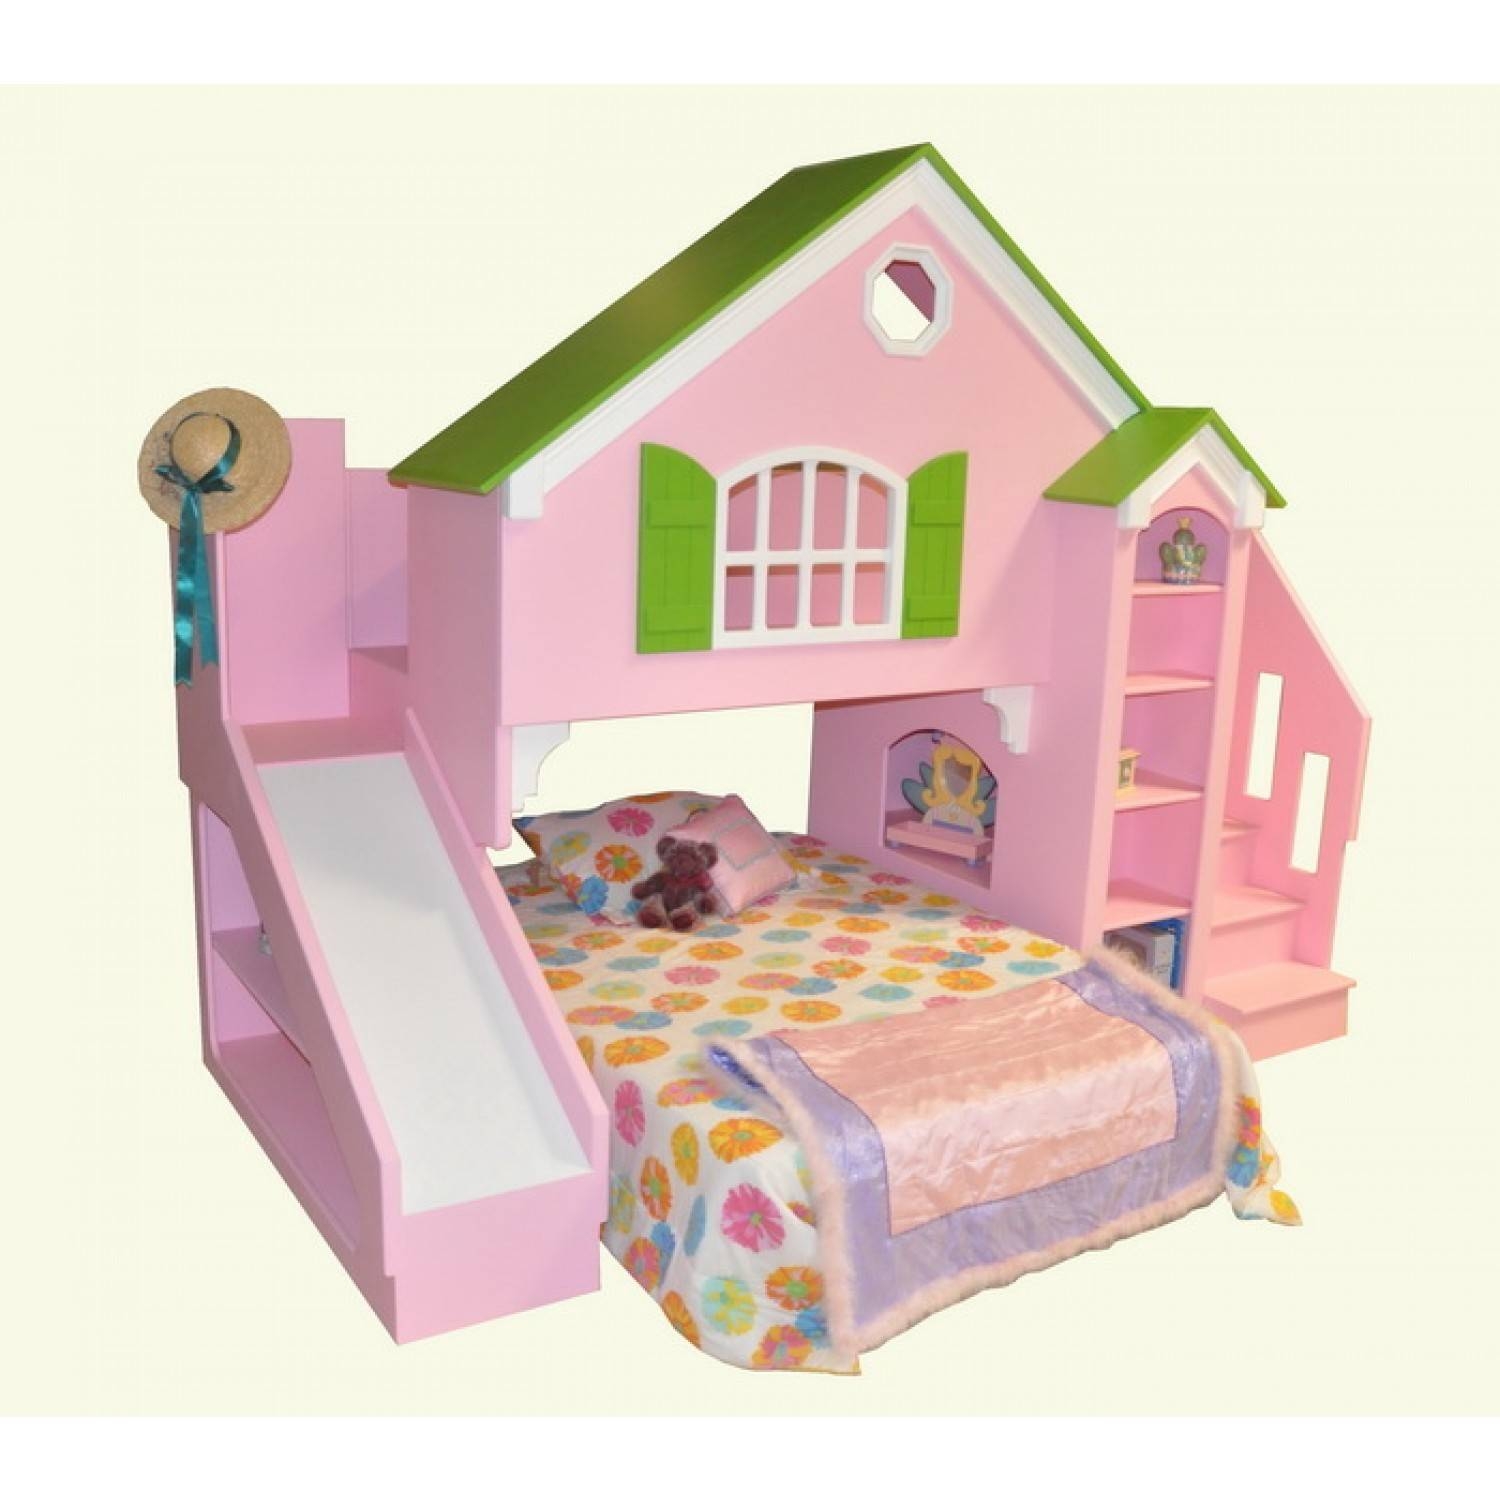 Olivia dollhouse bed